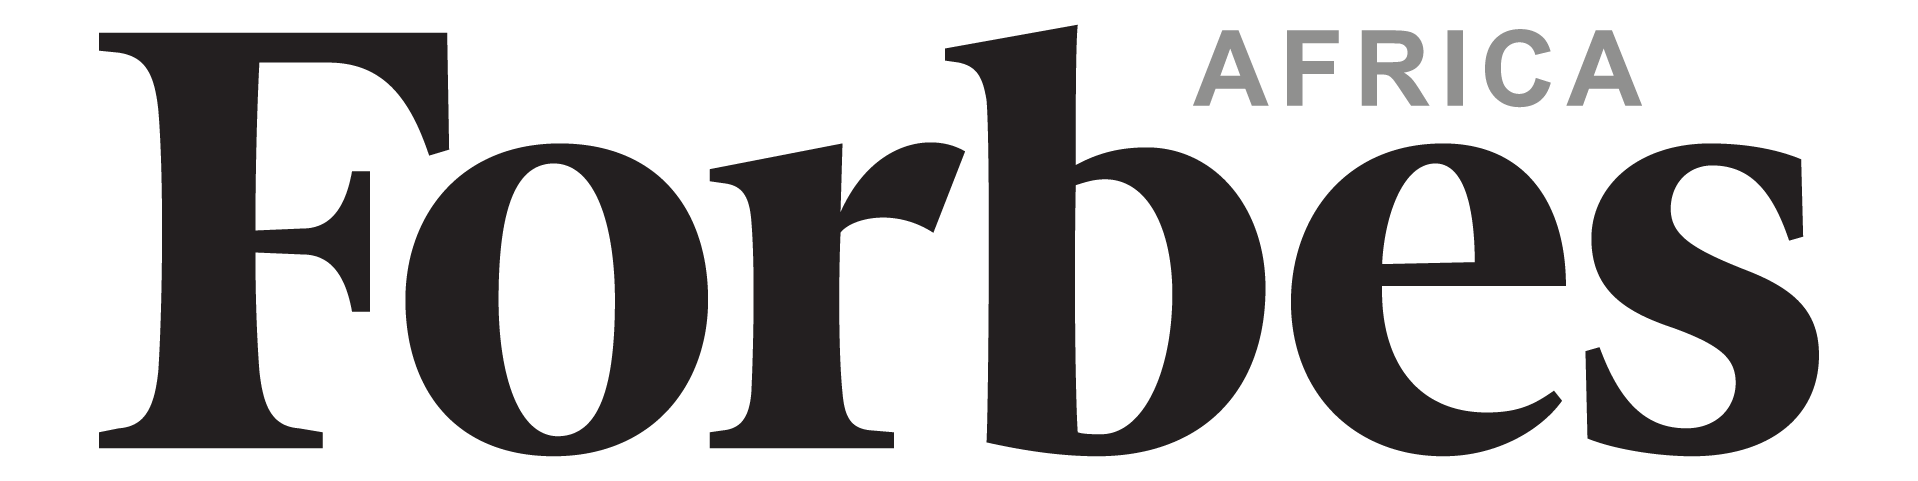 Forbes Afrika - Media - Utgivere